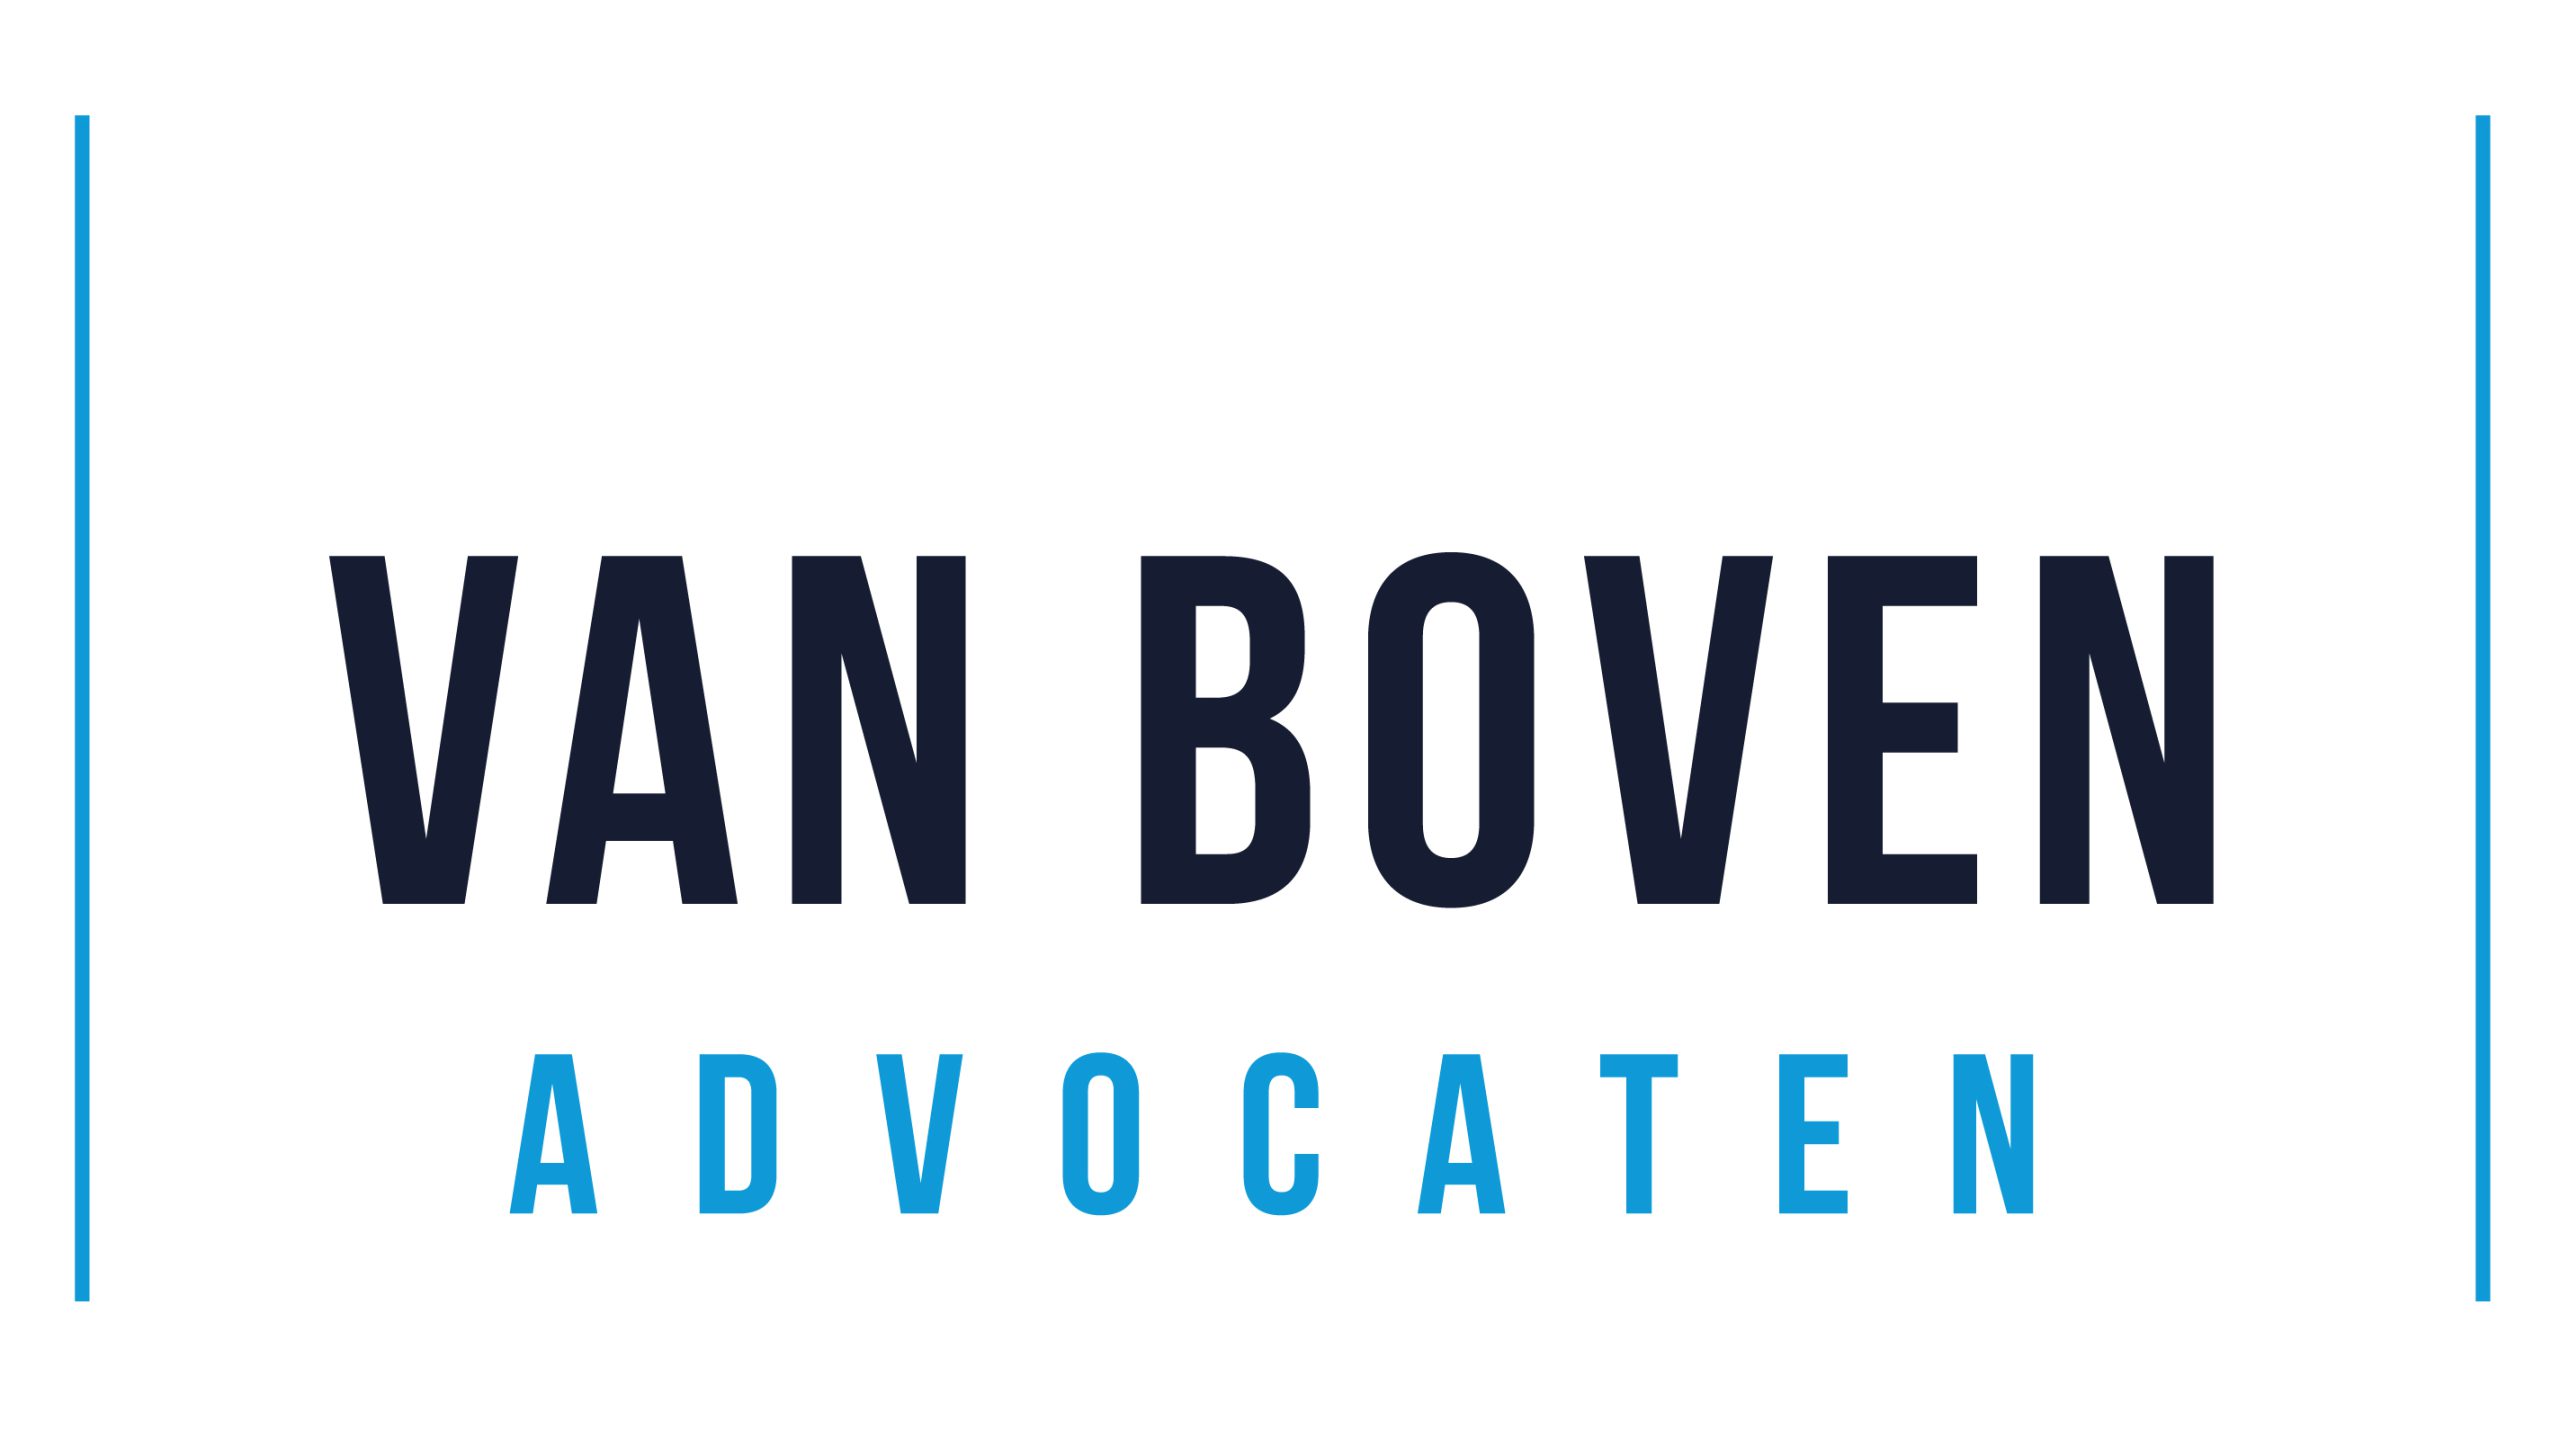 Van Boven advocaten